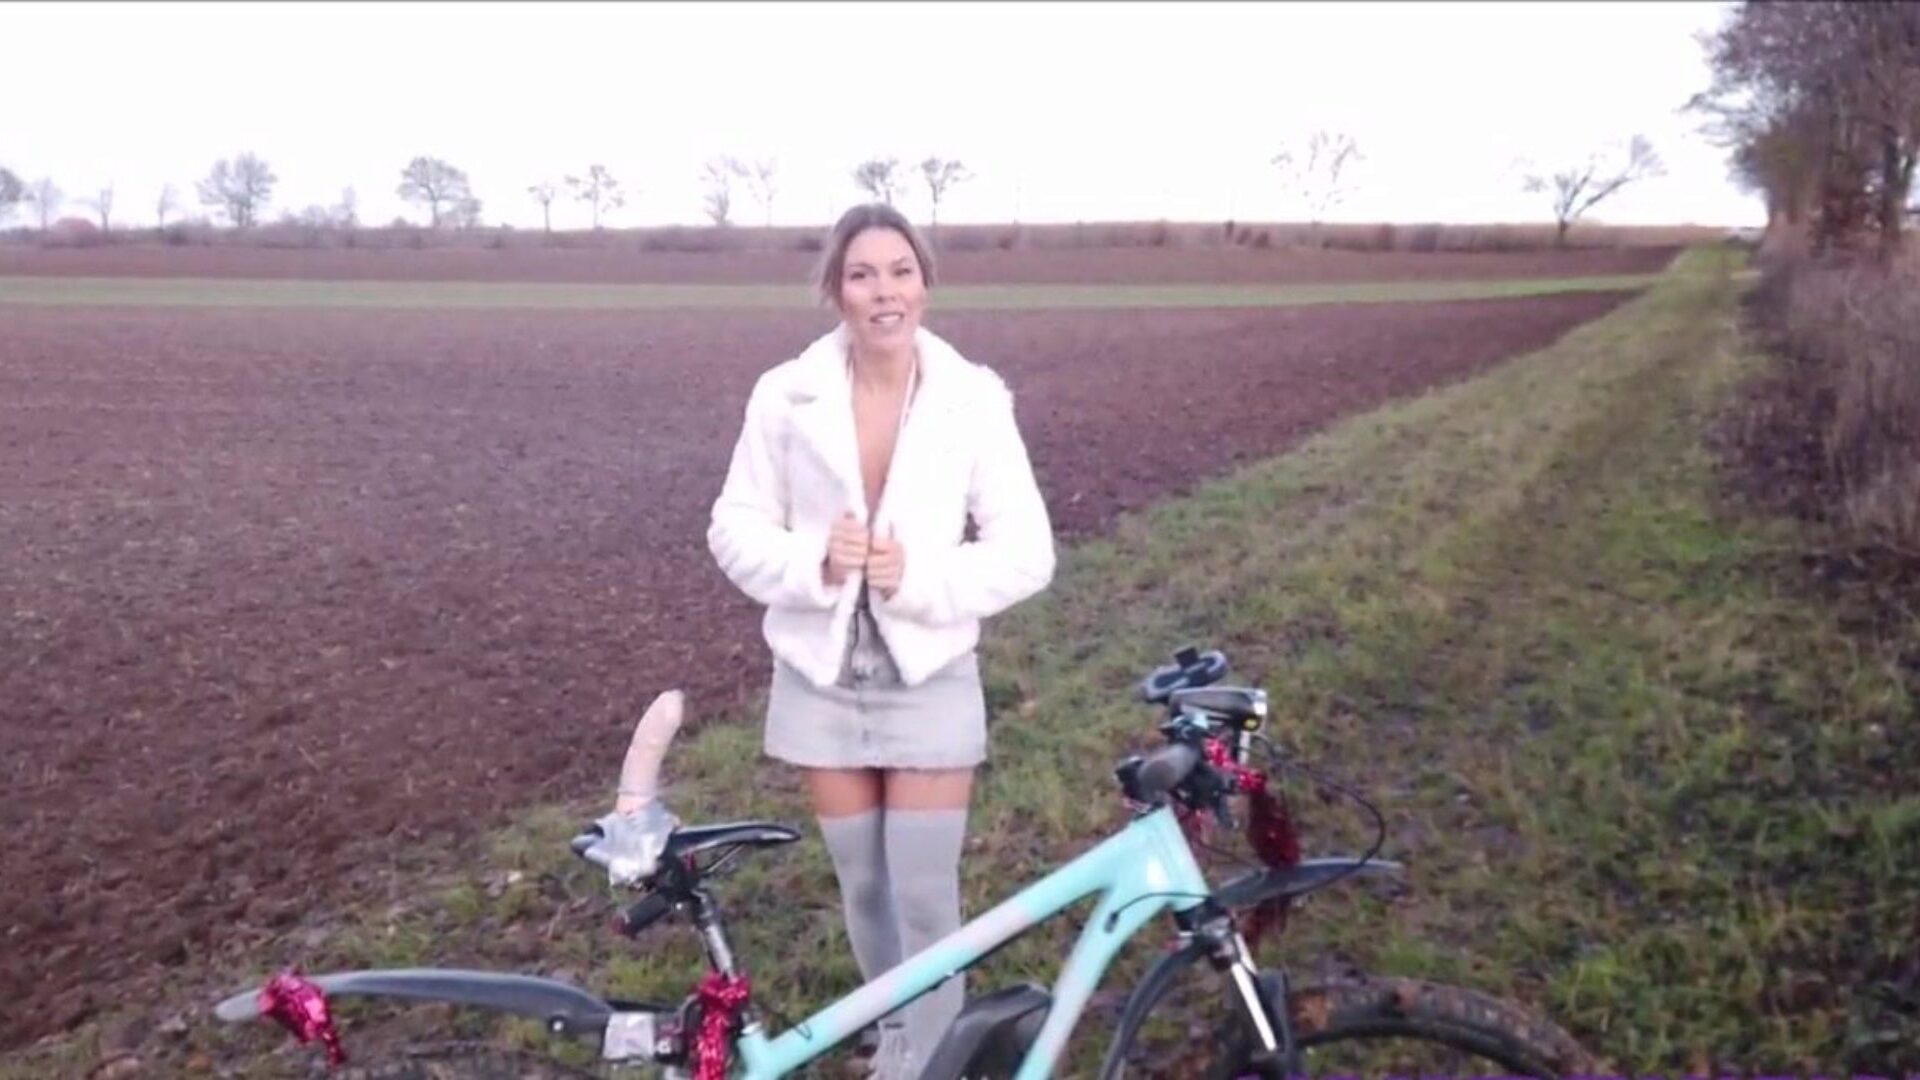 το πρωτότυπο μέρος 2 η Λάρα Μπέργκμαν κάνει κακή χρήση του ποδηλάτου της: πορνό 2b παρακολουθήστε το αρχικό μέρος δύο η Λάρα Μπέργκμαν κάνει κακή χρήση της σκηνής της ταινίας ποδηλάτου στο xhamster - η απόλυτη συλλογή δωρεάν γερμανικών ταινιών HD σκληρού πυρήνα πορνογραφικών ταινιών